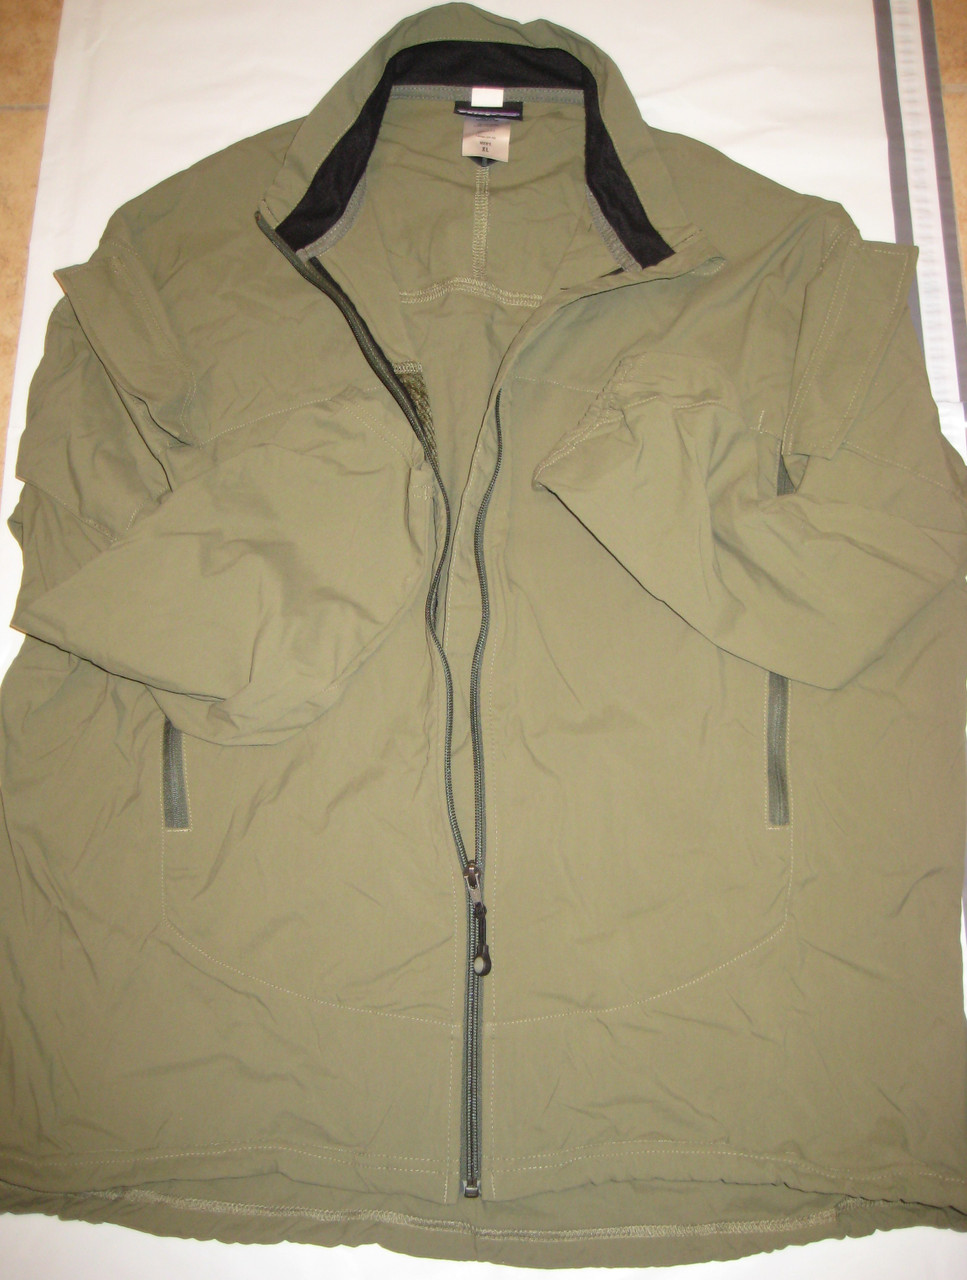 パタゴニア マーズ スリングショット ジャケット ジェネレーション III アルファ グリーン 米国製